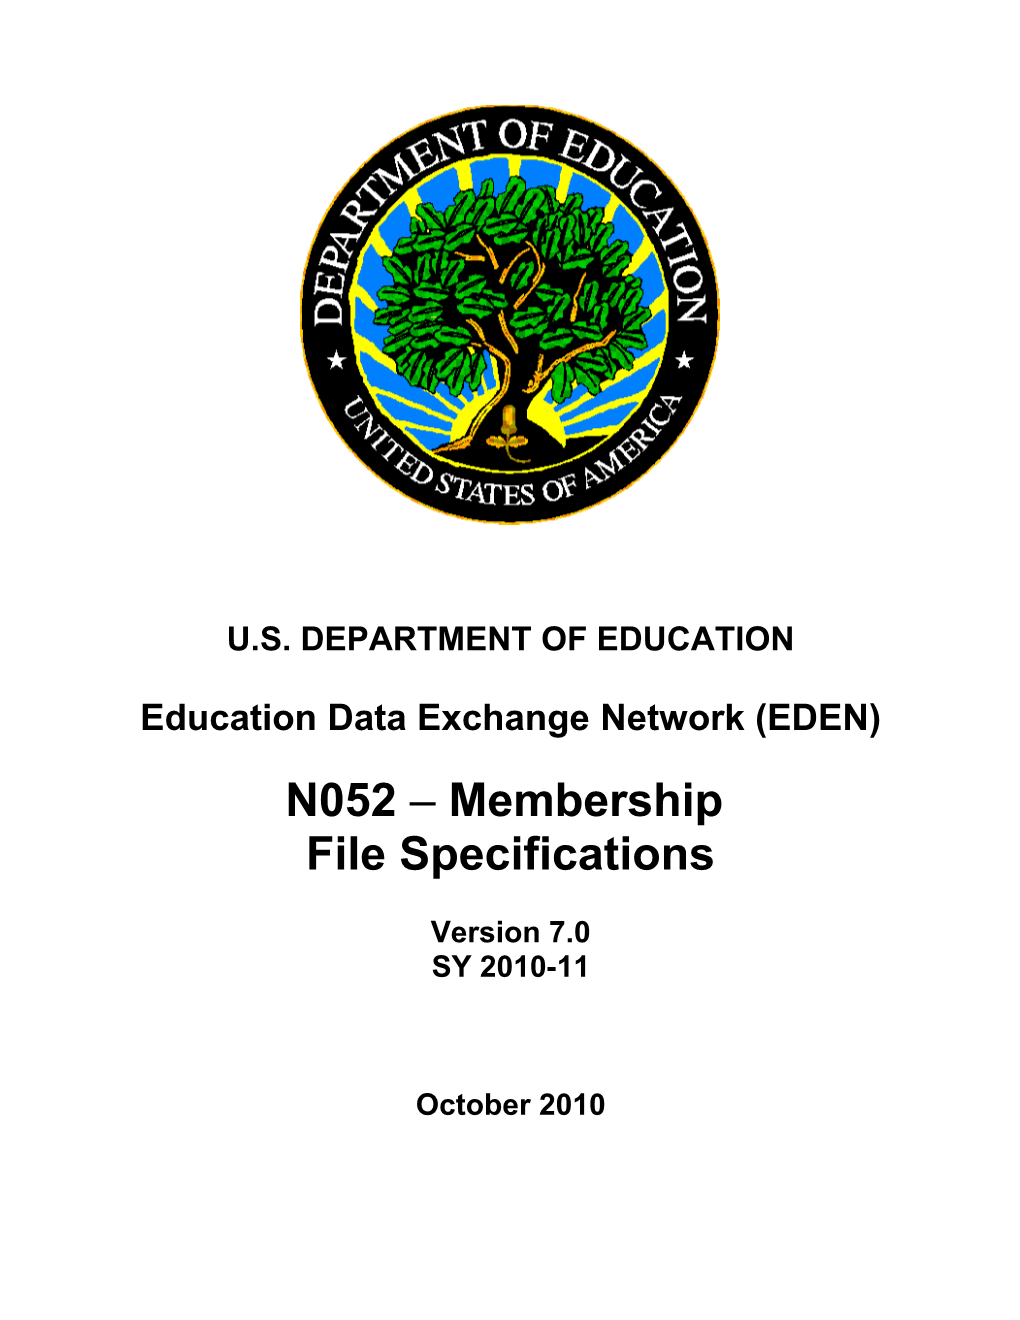 N052-Membership File Specifications (MS Word)